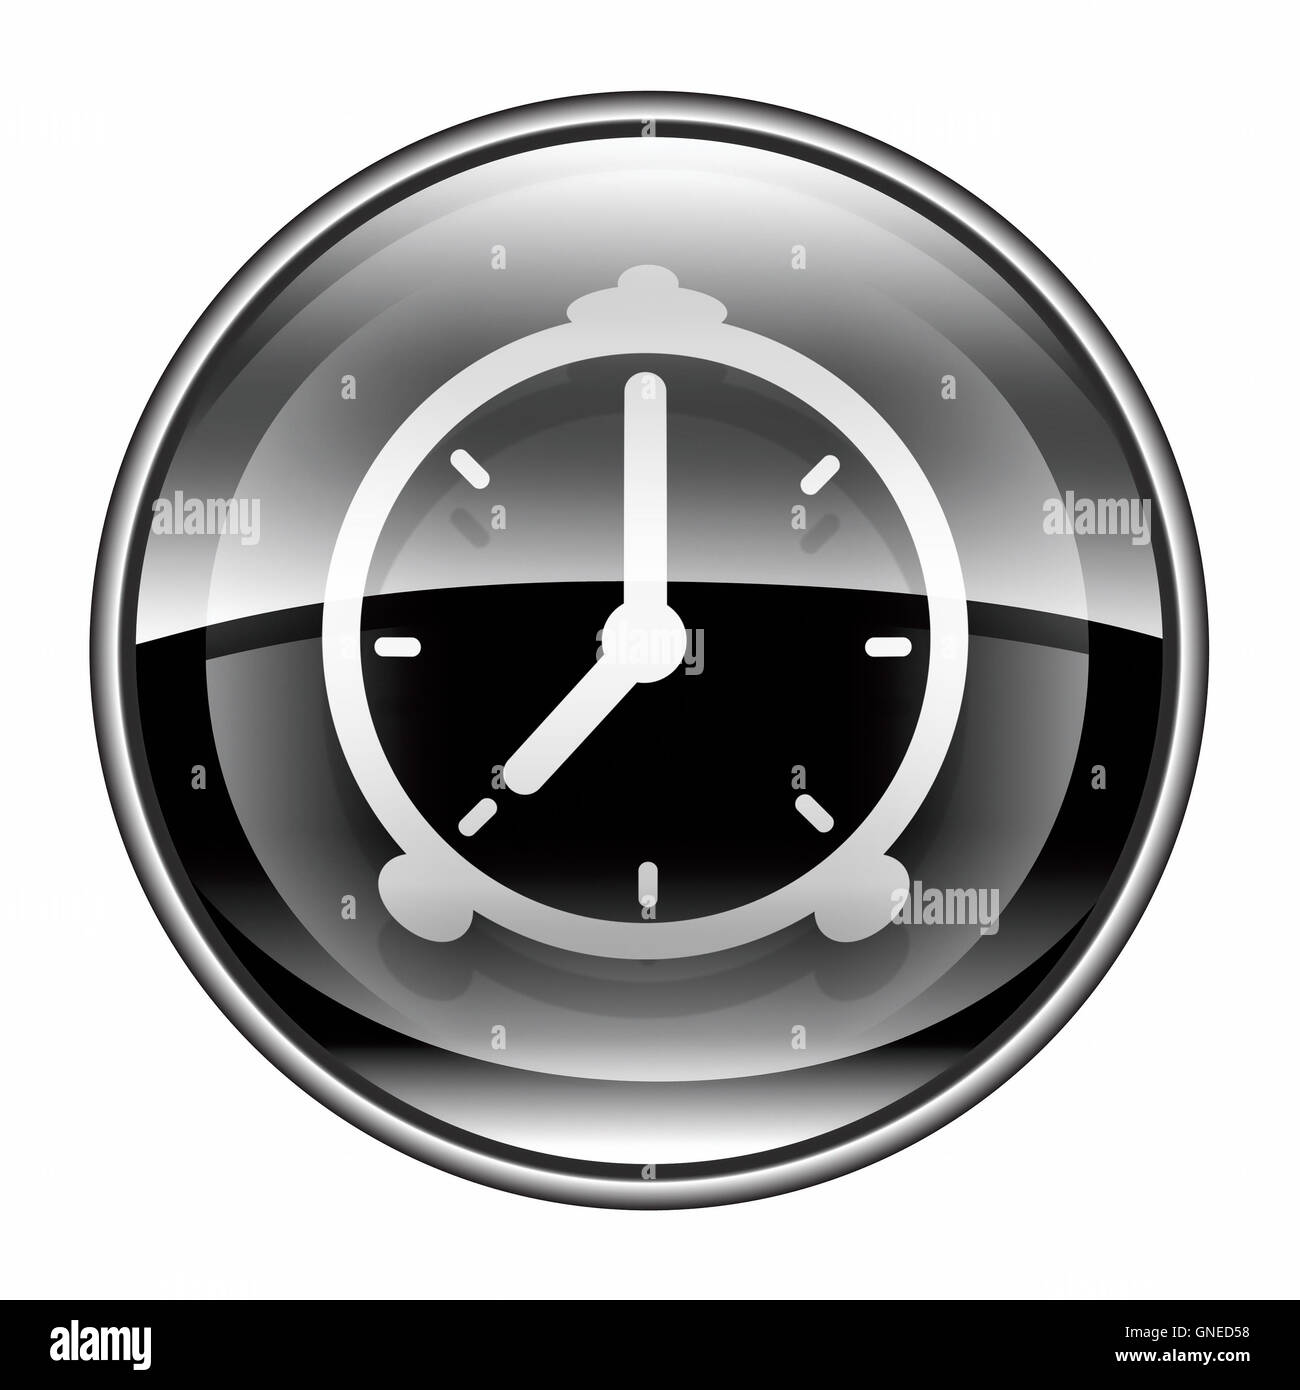 Alarm clock icon black, isolated on white background Stock Photo